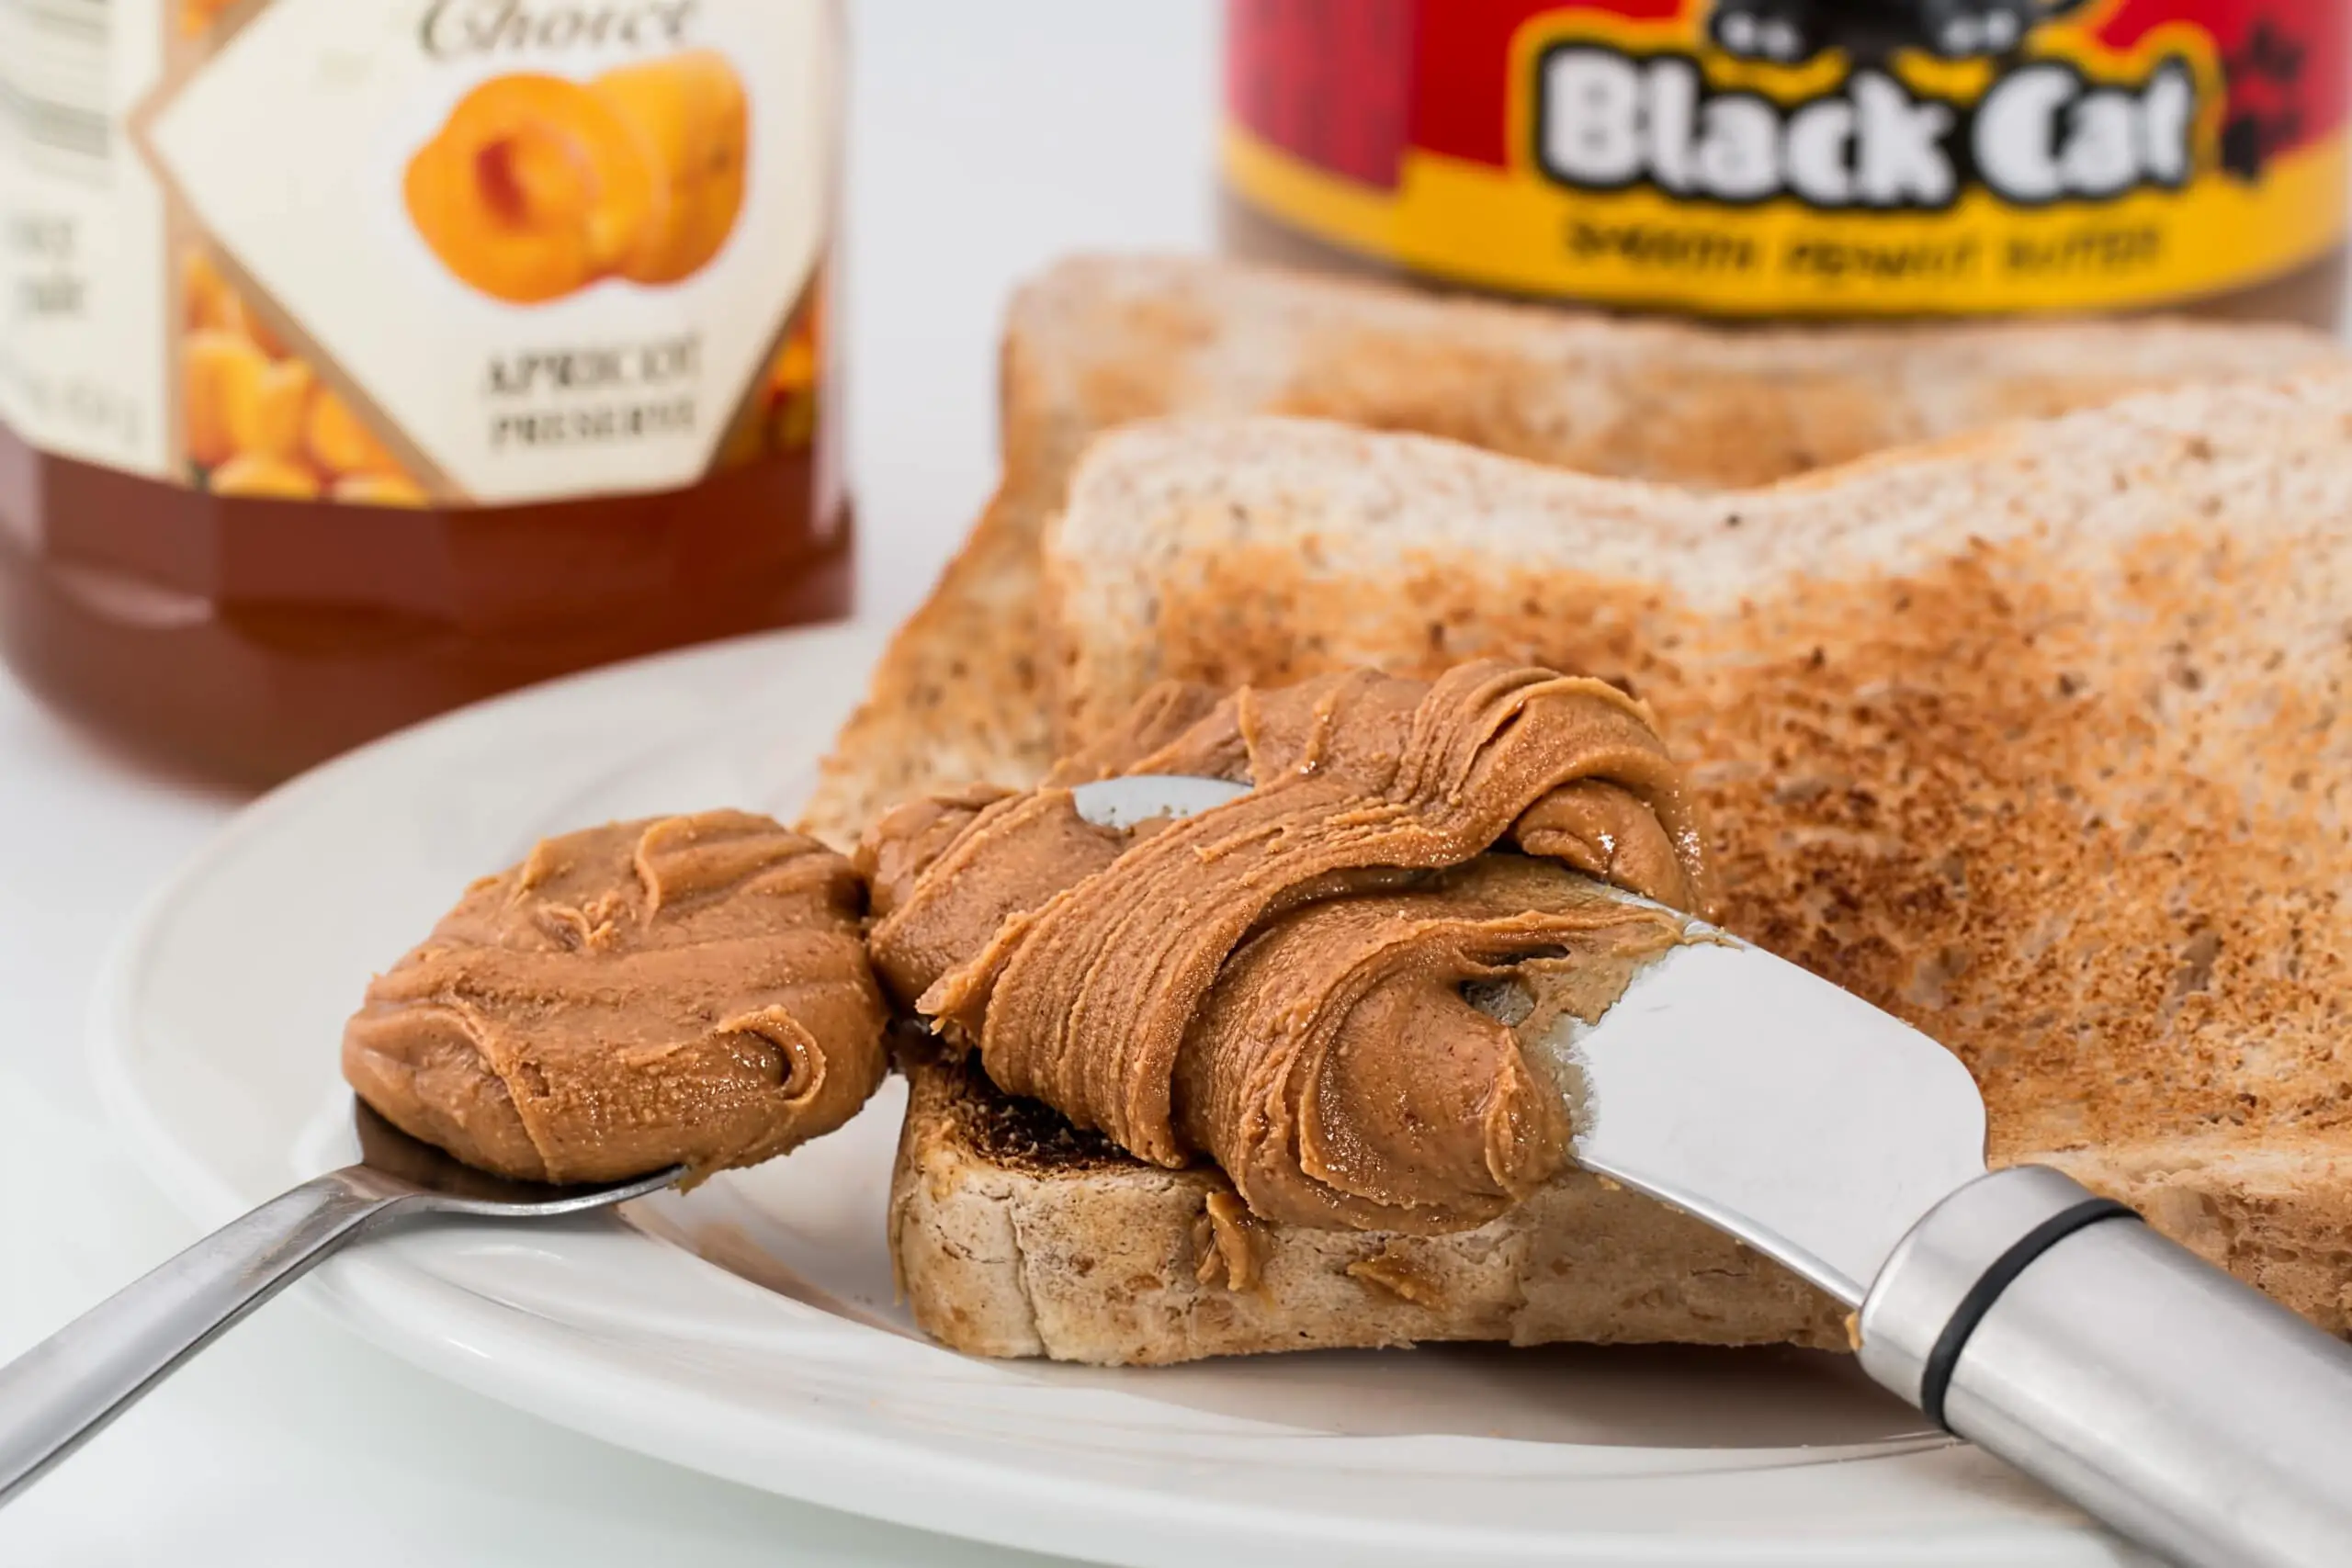 peanut butter, toast, jam